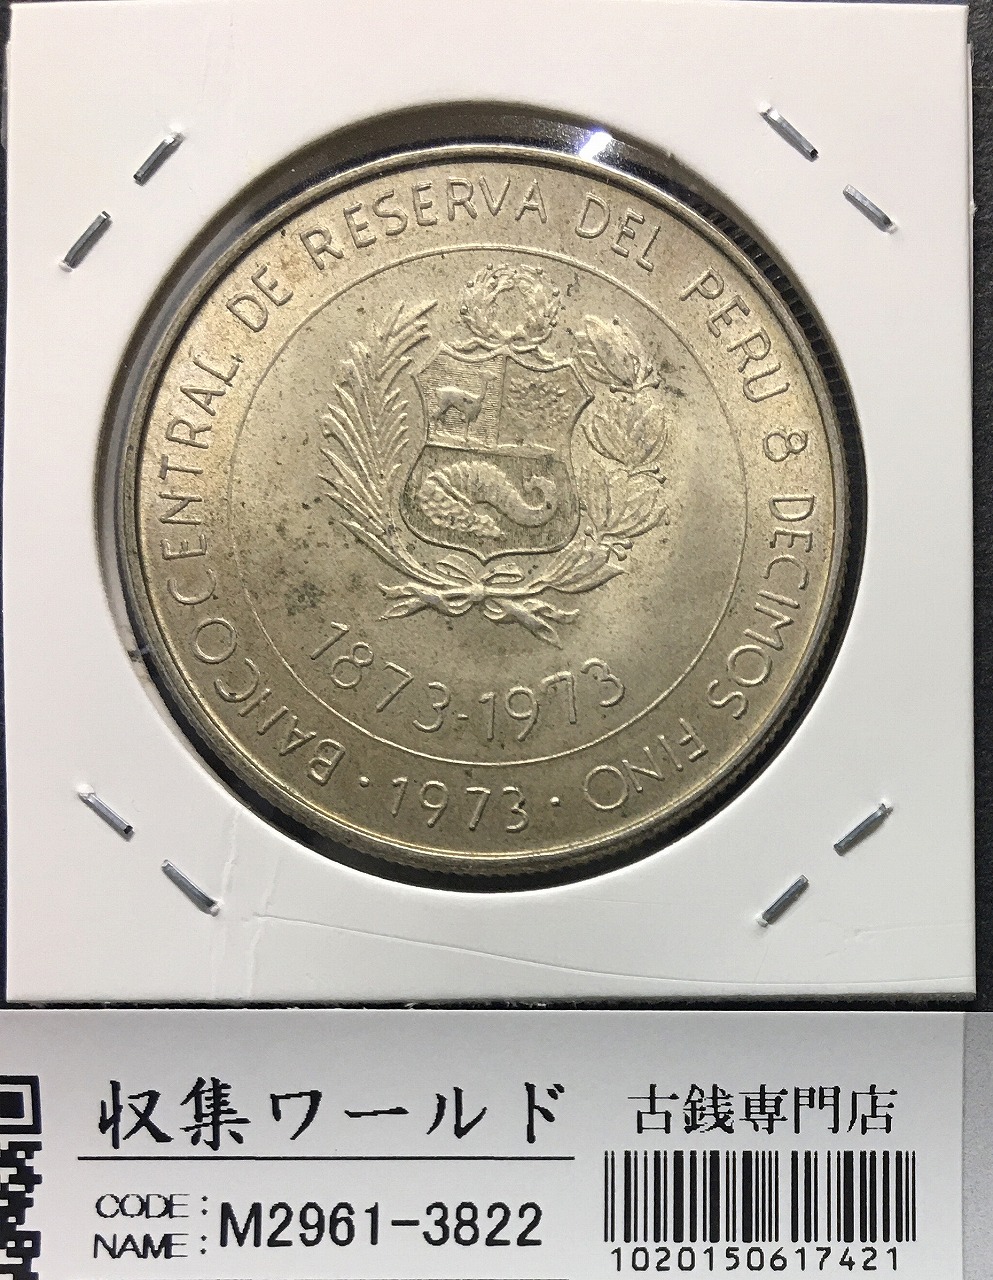 100ソル大型銀貨 1973年銘/日本ペルー修好100周年記念銀貨 100soles 未使用